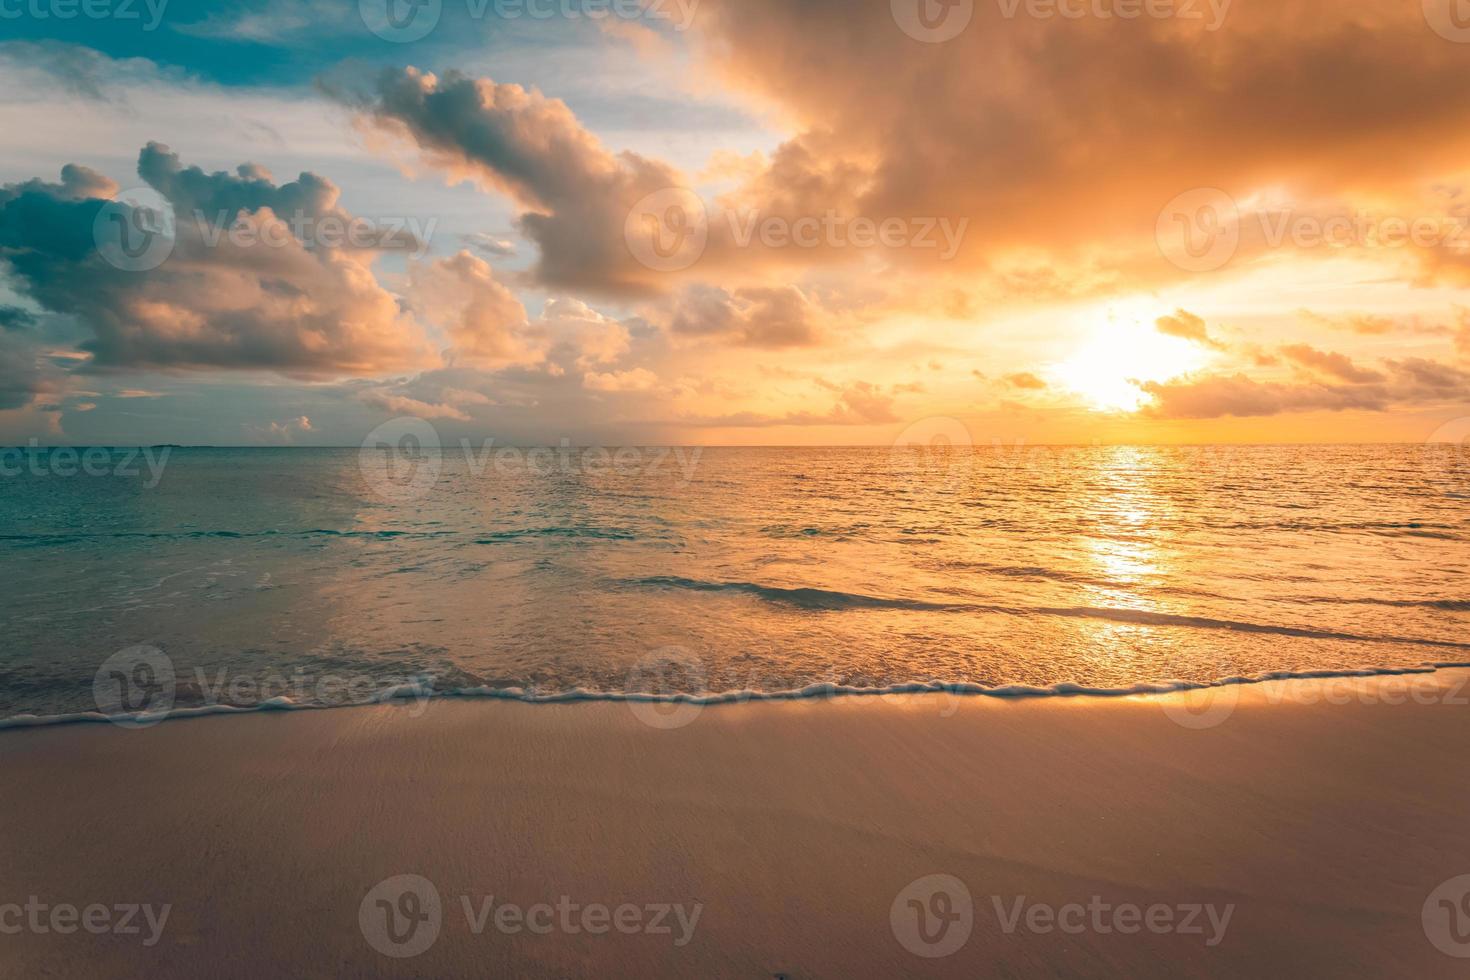 närbild av hav strand och färgrik solnedgång himmel. panorama- strand landskap. tömma tropisk strand och havsbild. orange och gyllene solnedgång himmel, mjuk sand, stillhet, lugn avkopplande solljus, sommar humör foto